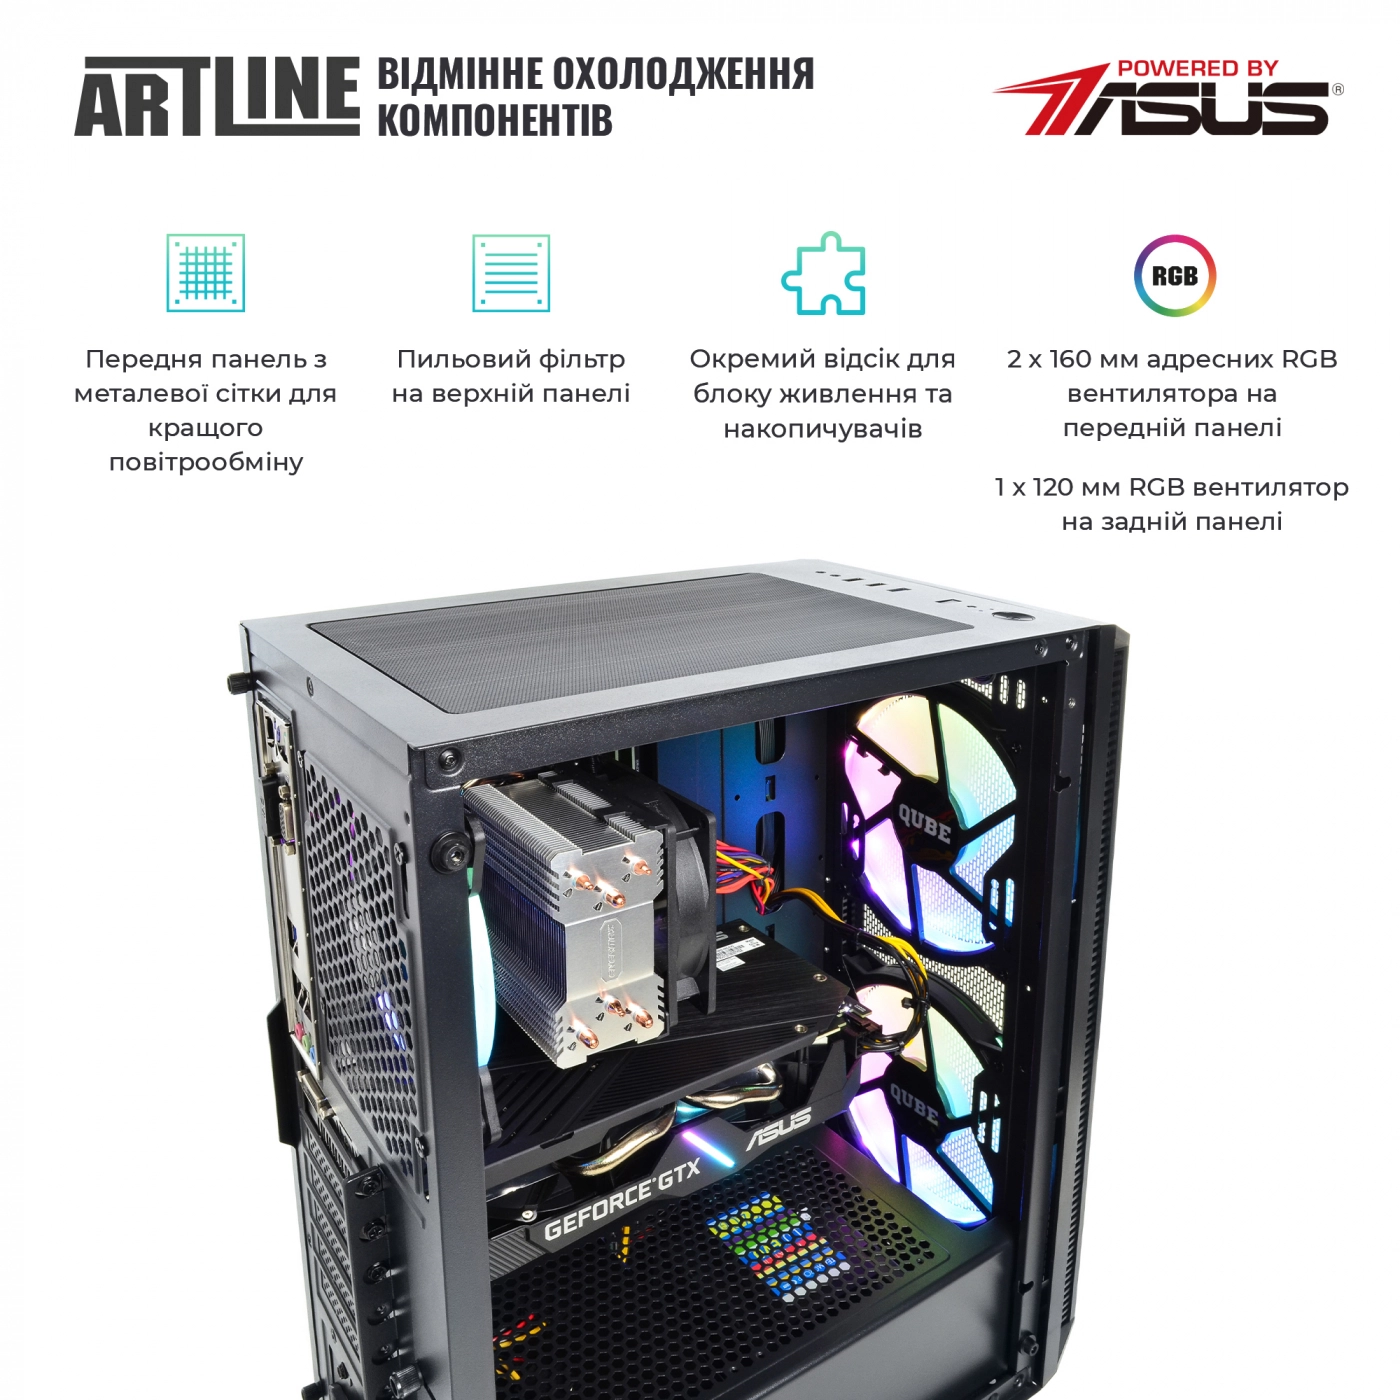 Купить Компьютер ARTLINE Gaming X53v23 - фото 2